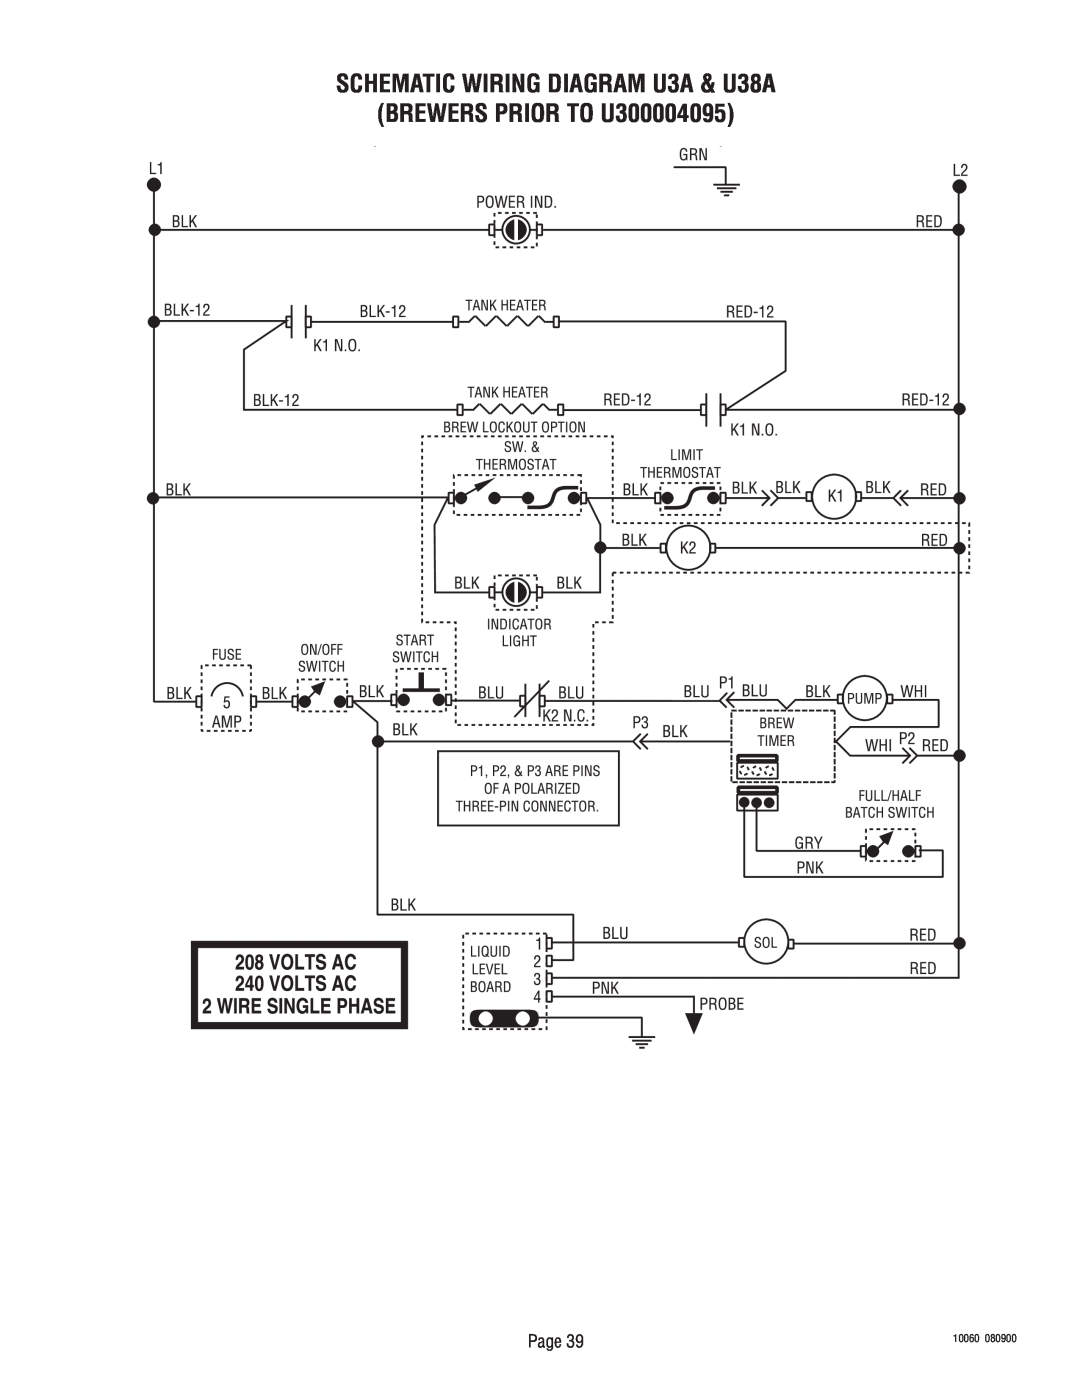 Bunn service manual SCHEMATIC WIRING DIAGRAM U3A & U38A BREWERS PRIOR TO U300004095, Page, 10060, 080900 